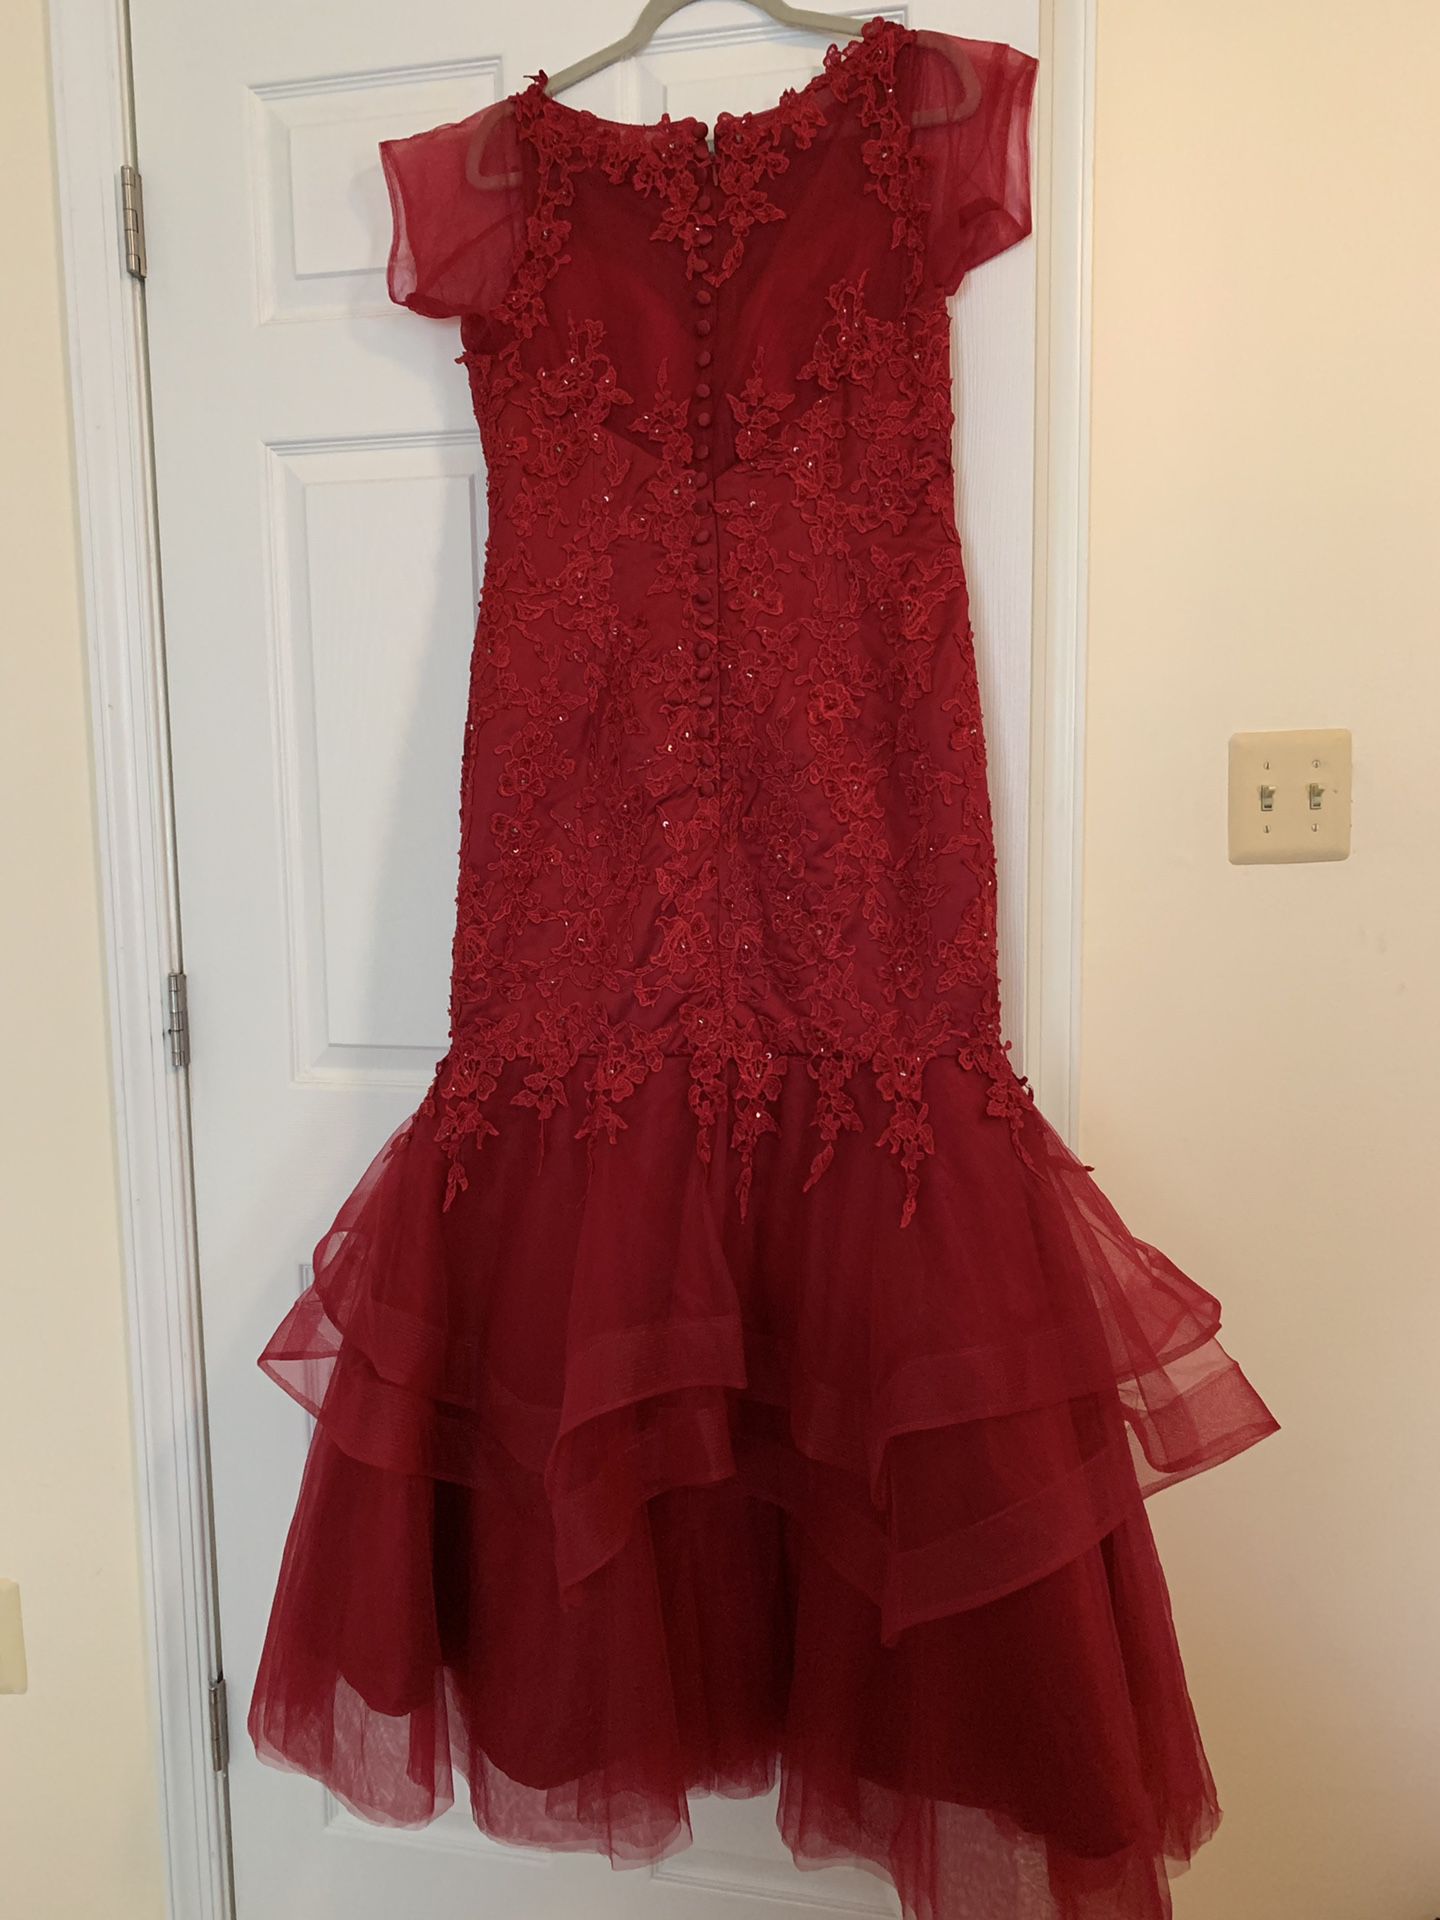 Burgundy prom dress size 16